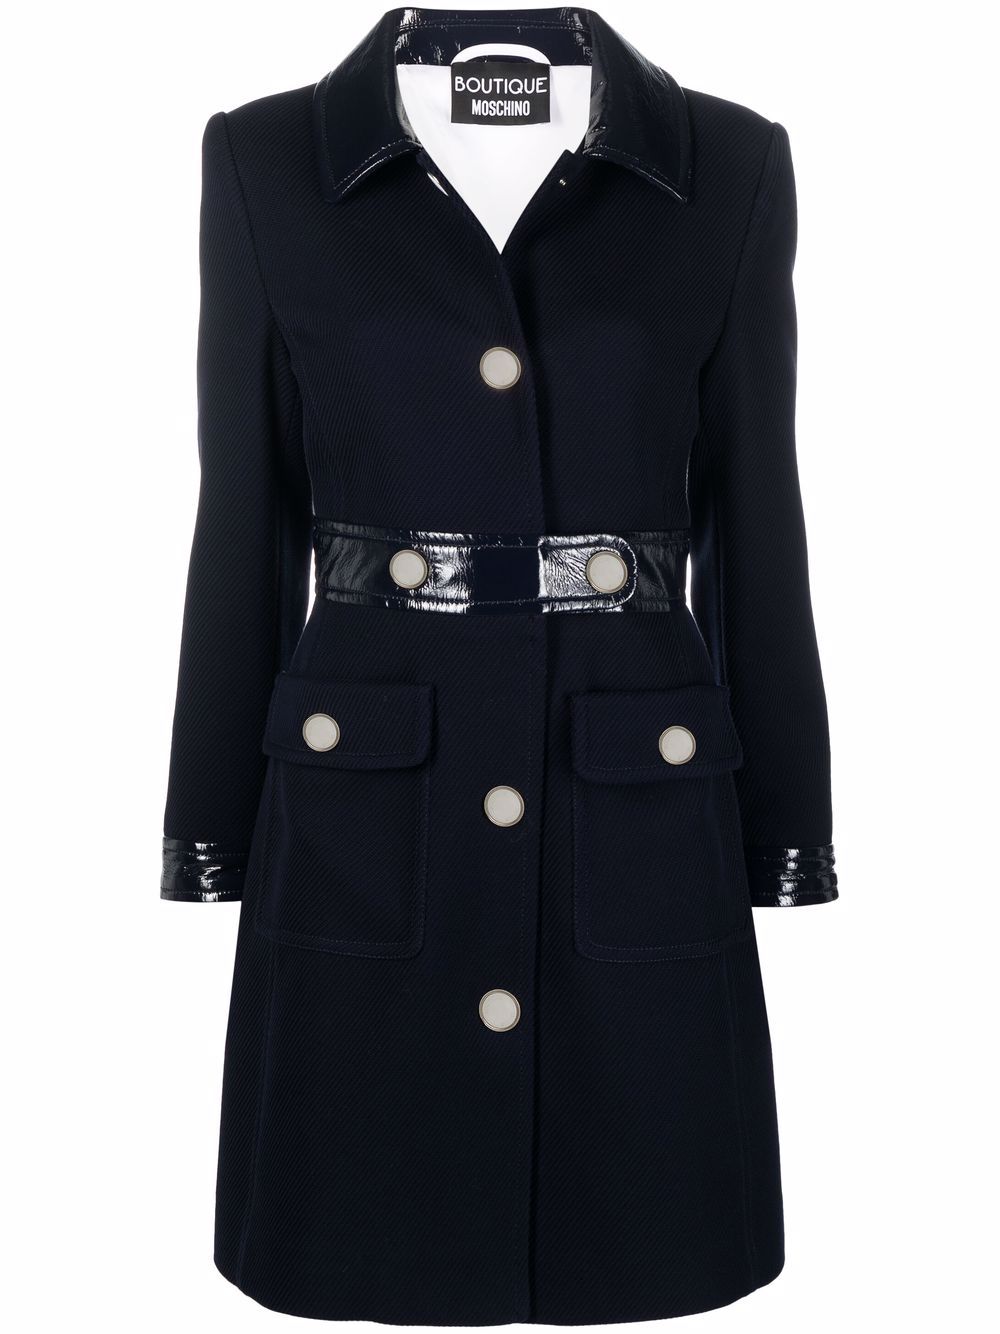 фото Boutique moschino пальто с контрастной отделкой